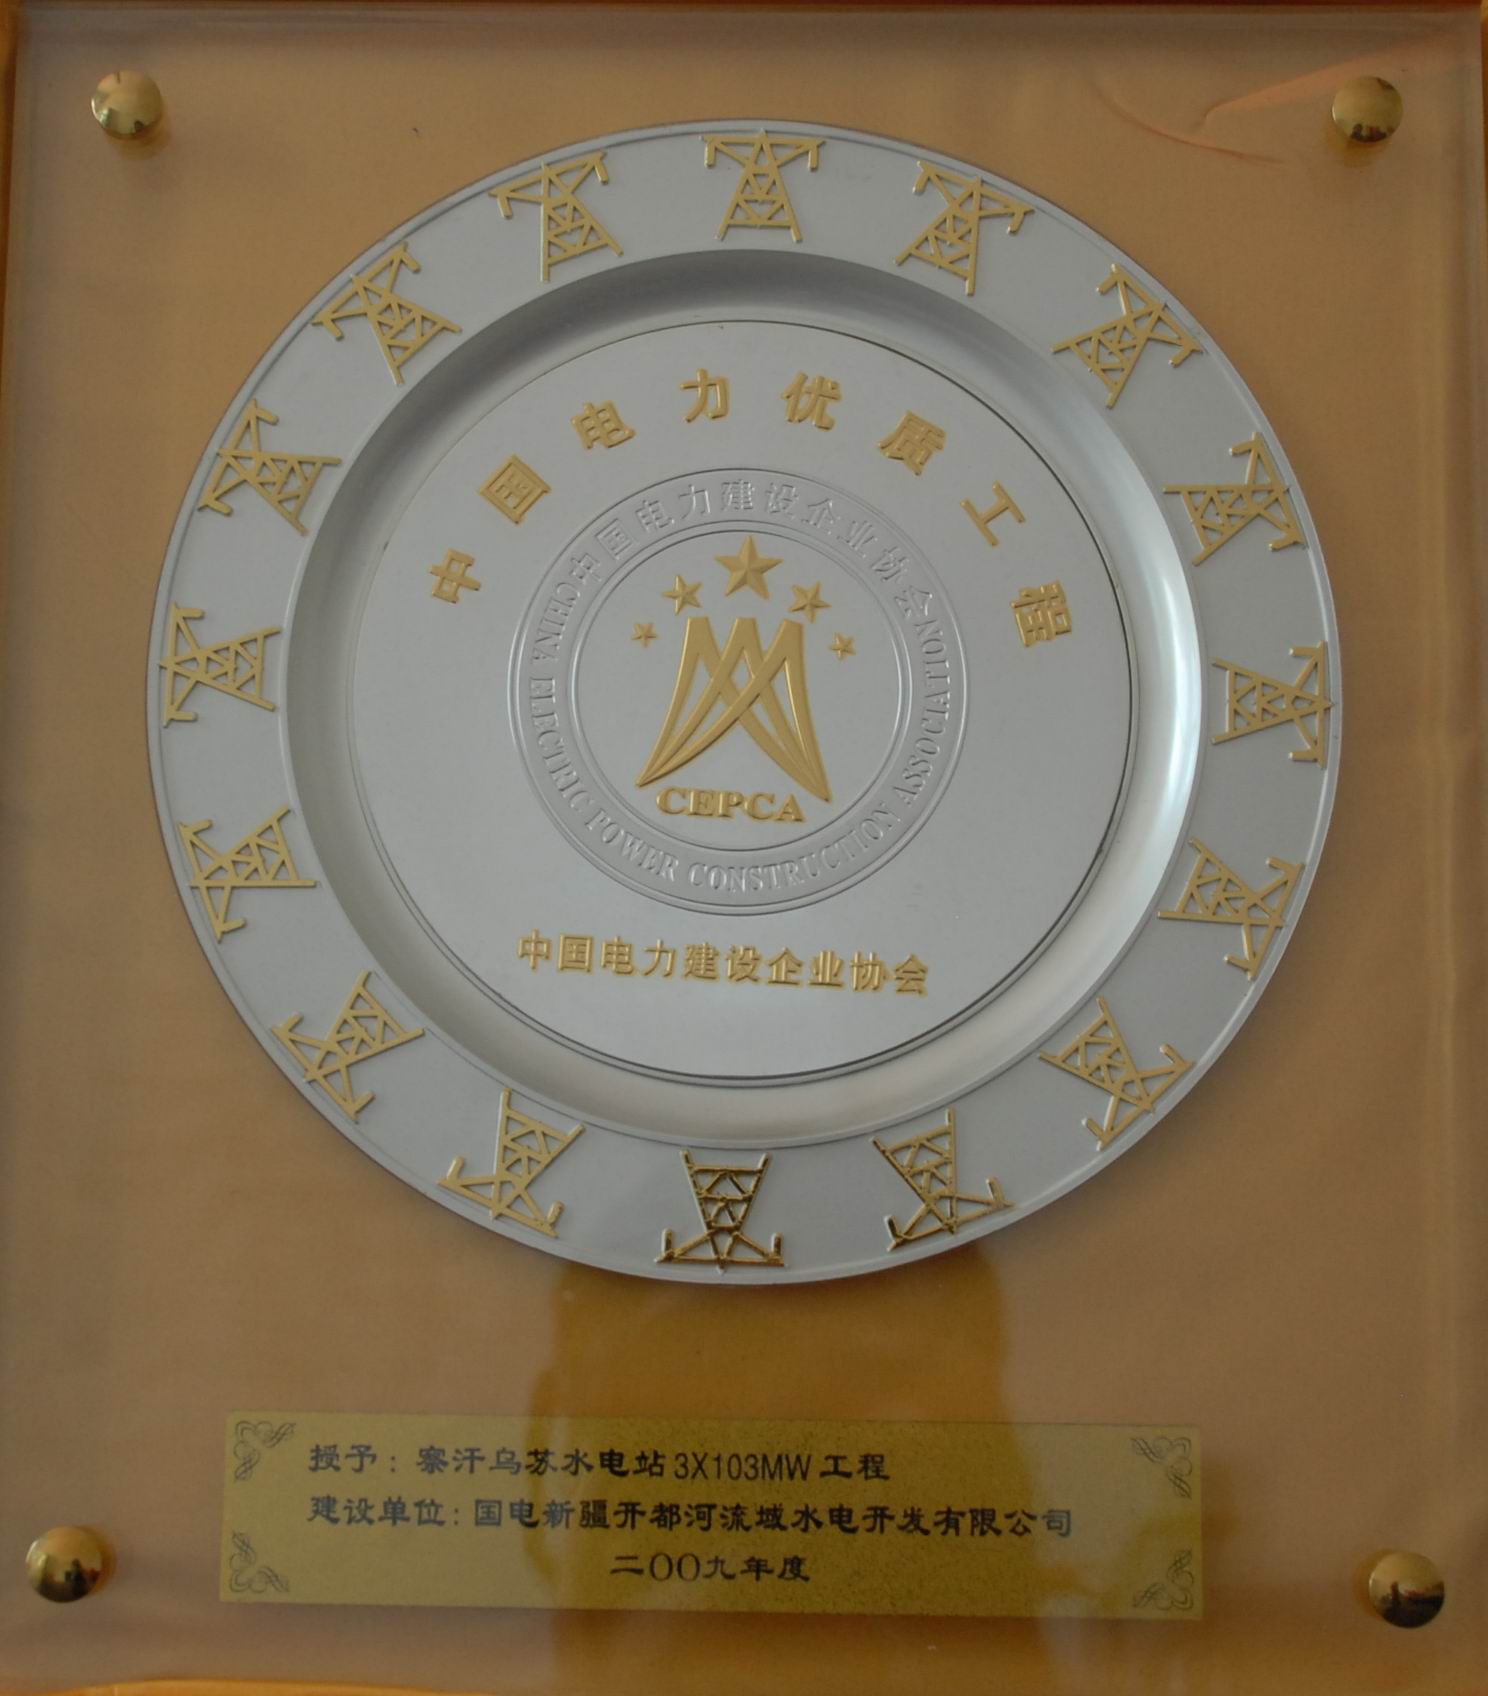 2009年中国电力优质工程奖.JPG